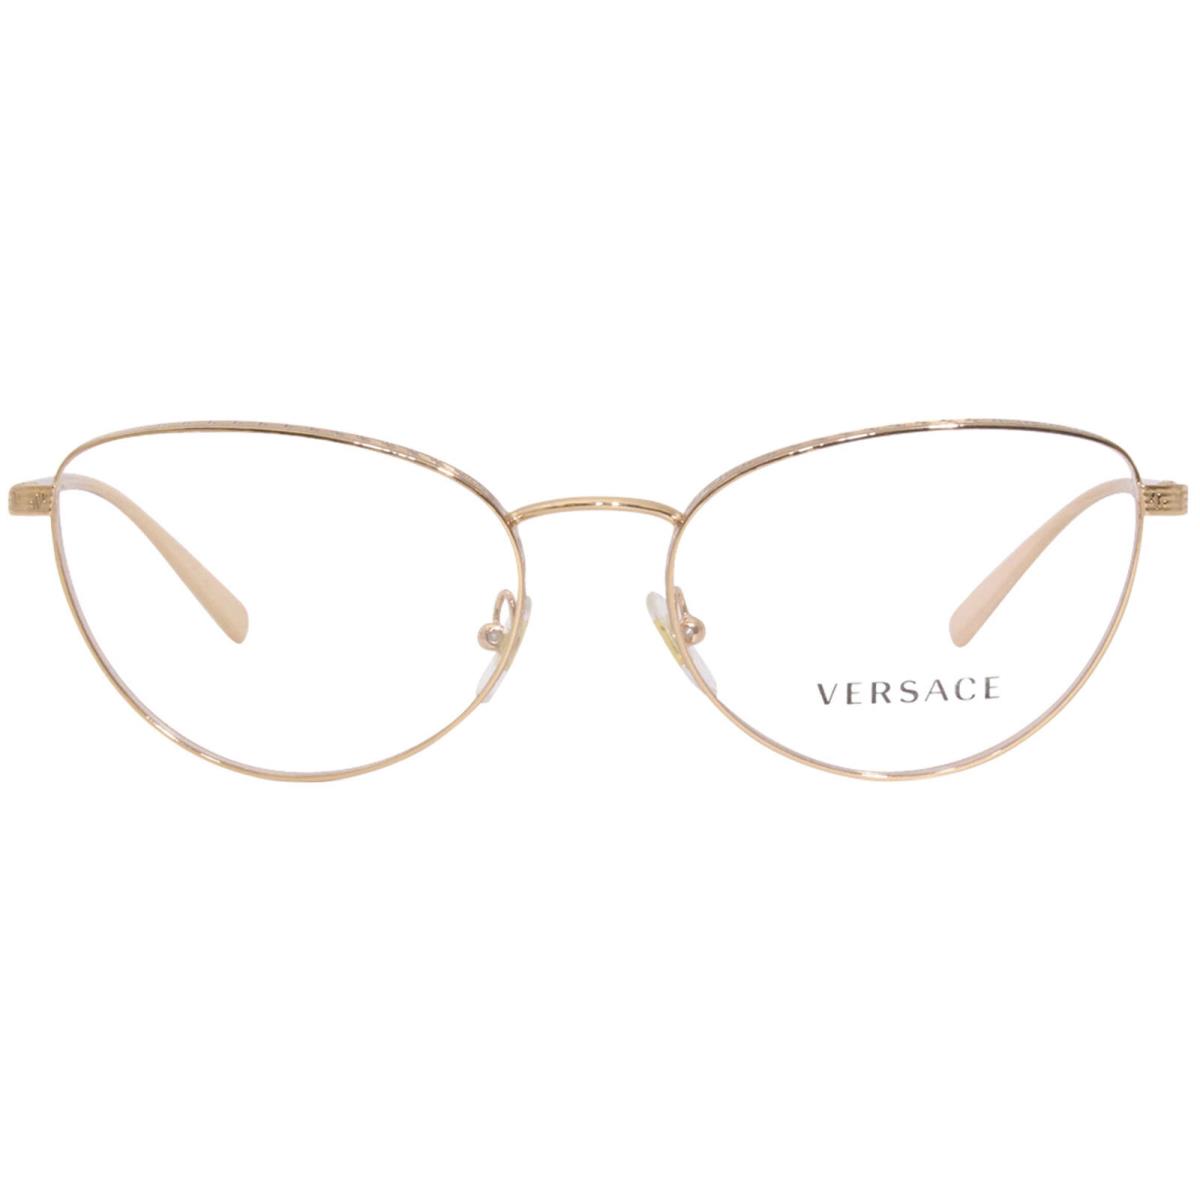 Versace 1266 1412 Eyeglasses Frame Women`s Pink Gold Full Rim Cat Eye 54mm